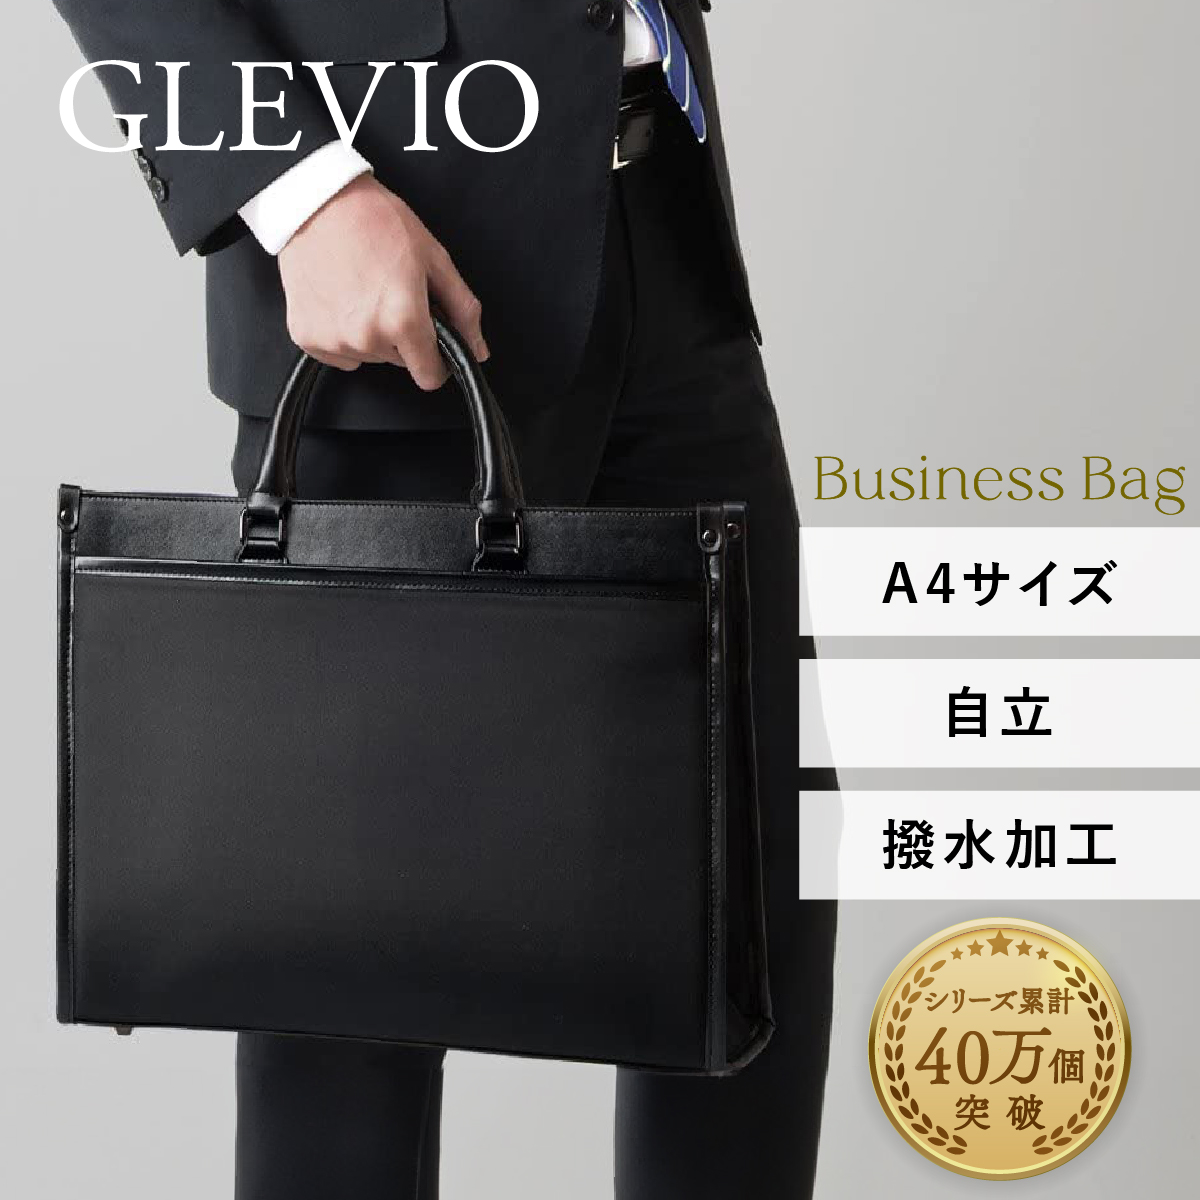 【楽天市場】GLEVIO ビジネスバッグ【大容量の収納力